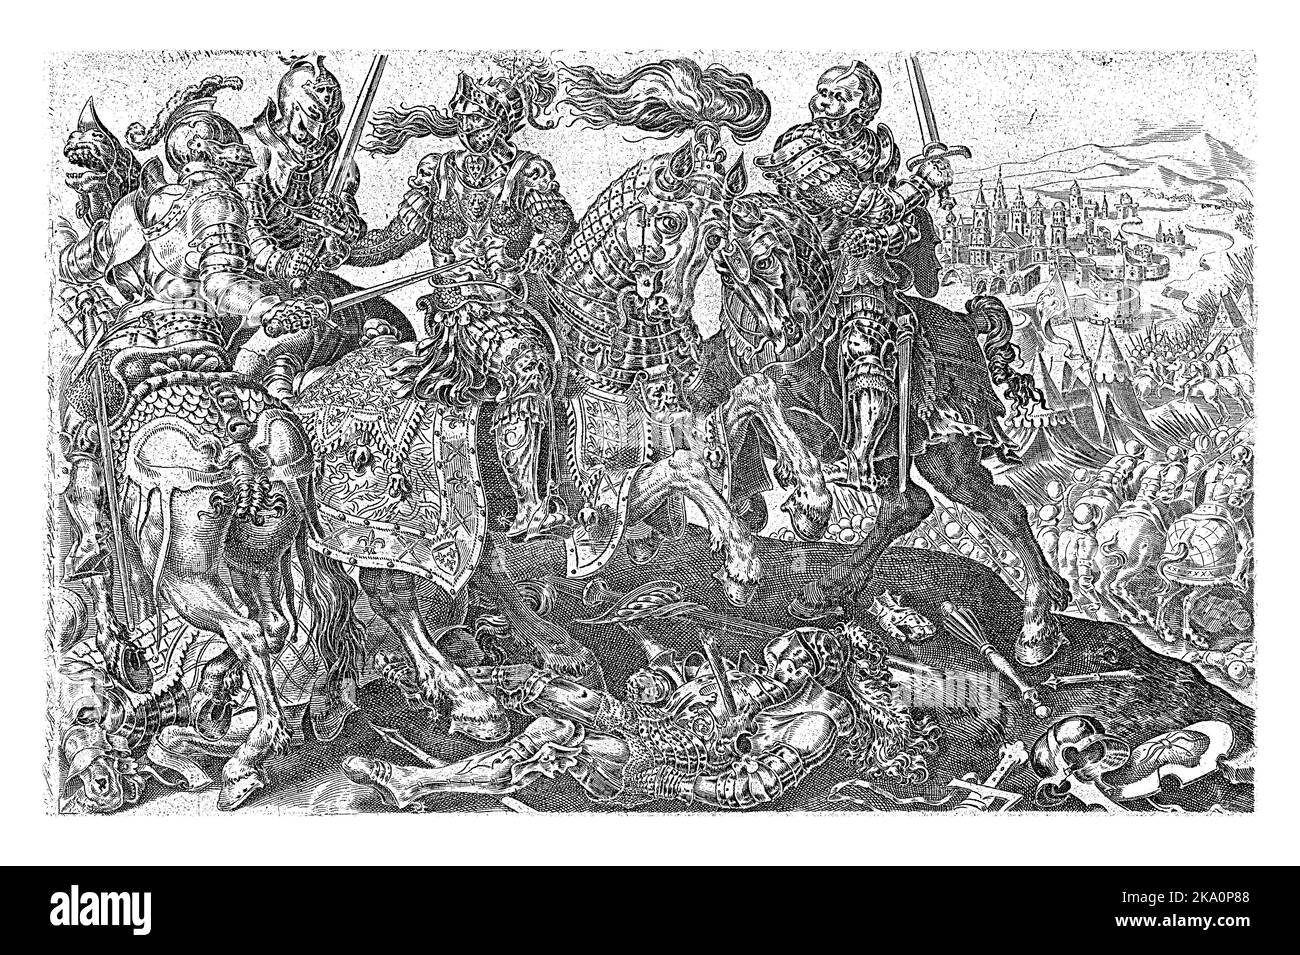 La cattura di Francesco i, re di Francia, durante la battaglia di Pavia nel 1525. Il re a cavallo è circondato da tre cavalieri, anche a cavallo. Foto Stock